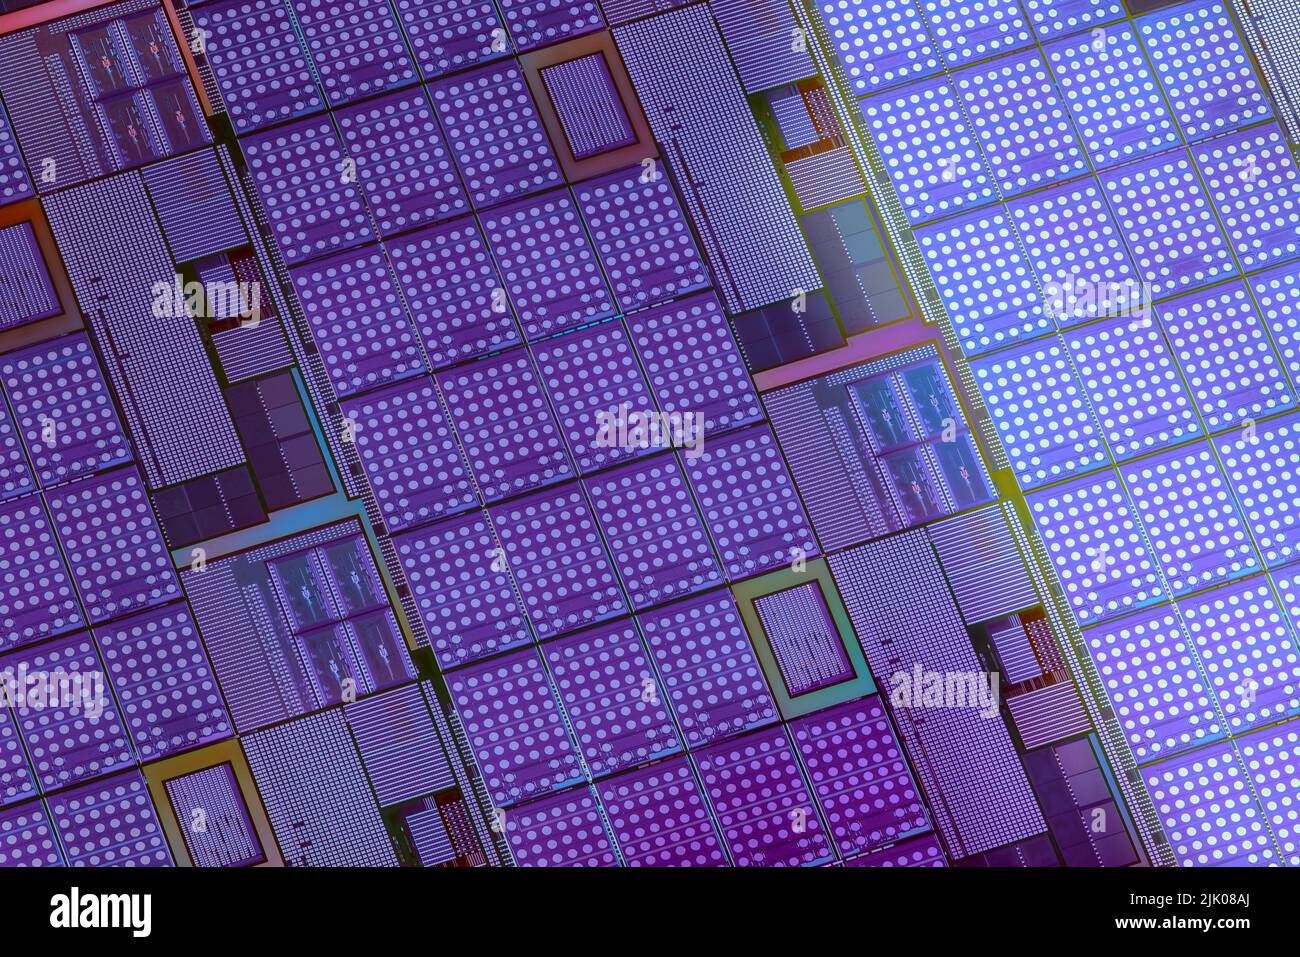 Siliziumwafer mit Mikrochips, die in der Elektronik zur Herstellung integrierter Schaltungen verwendet werden. High-Tech-Makrohintergrund im Vollformat. Stockfoto